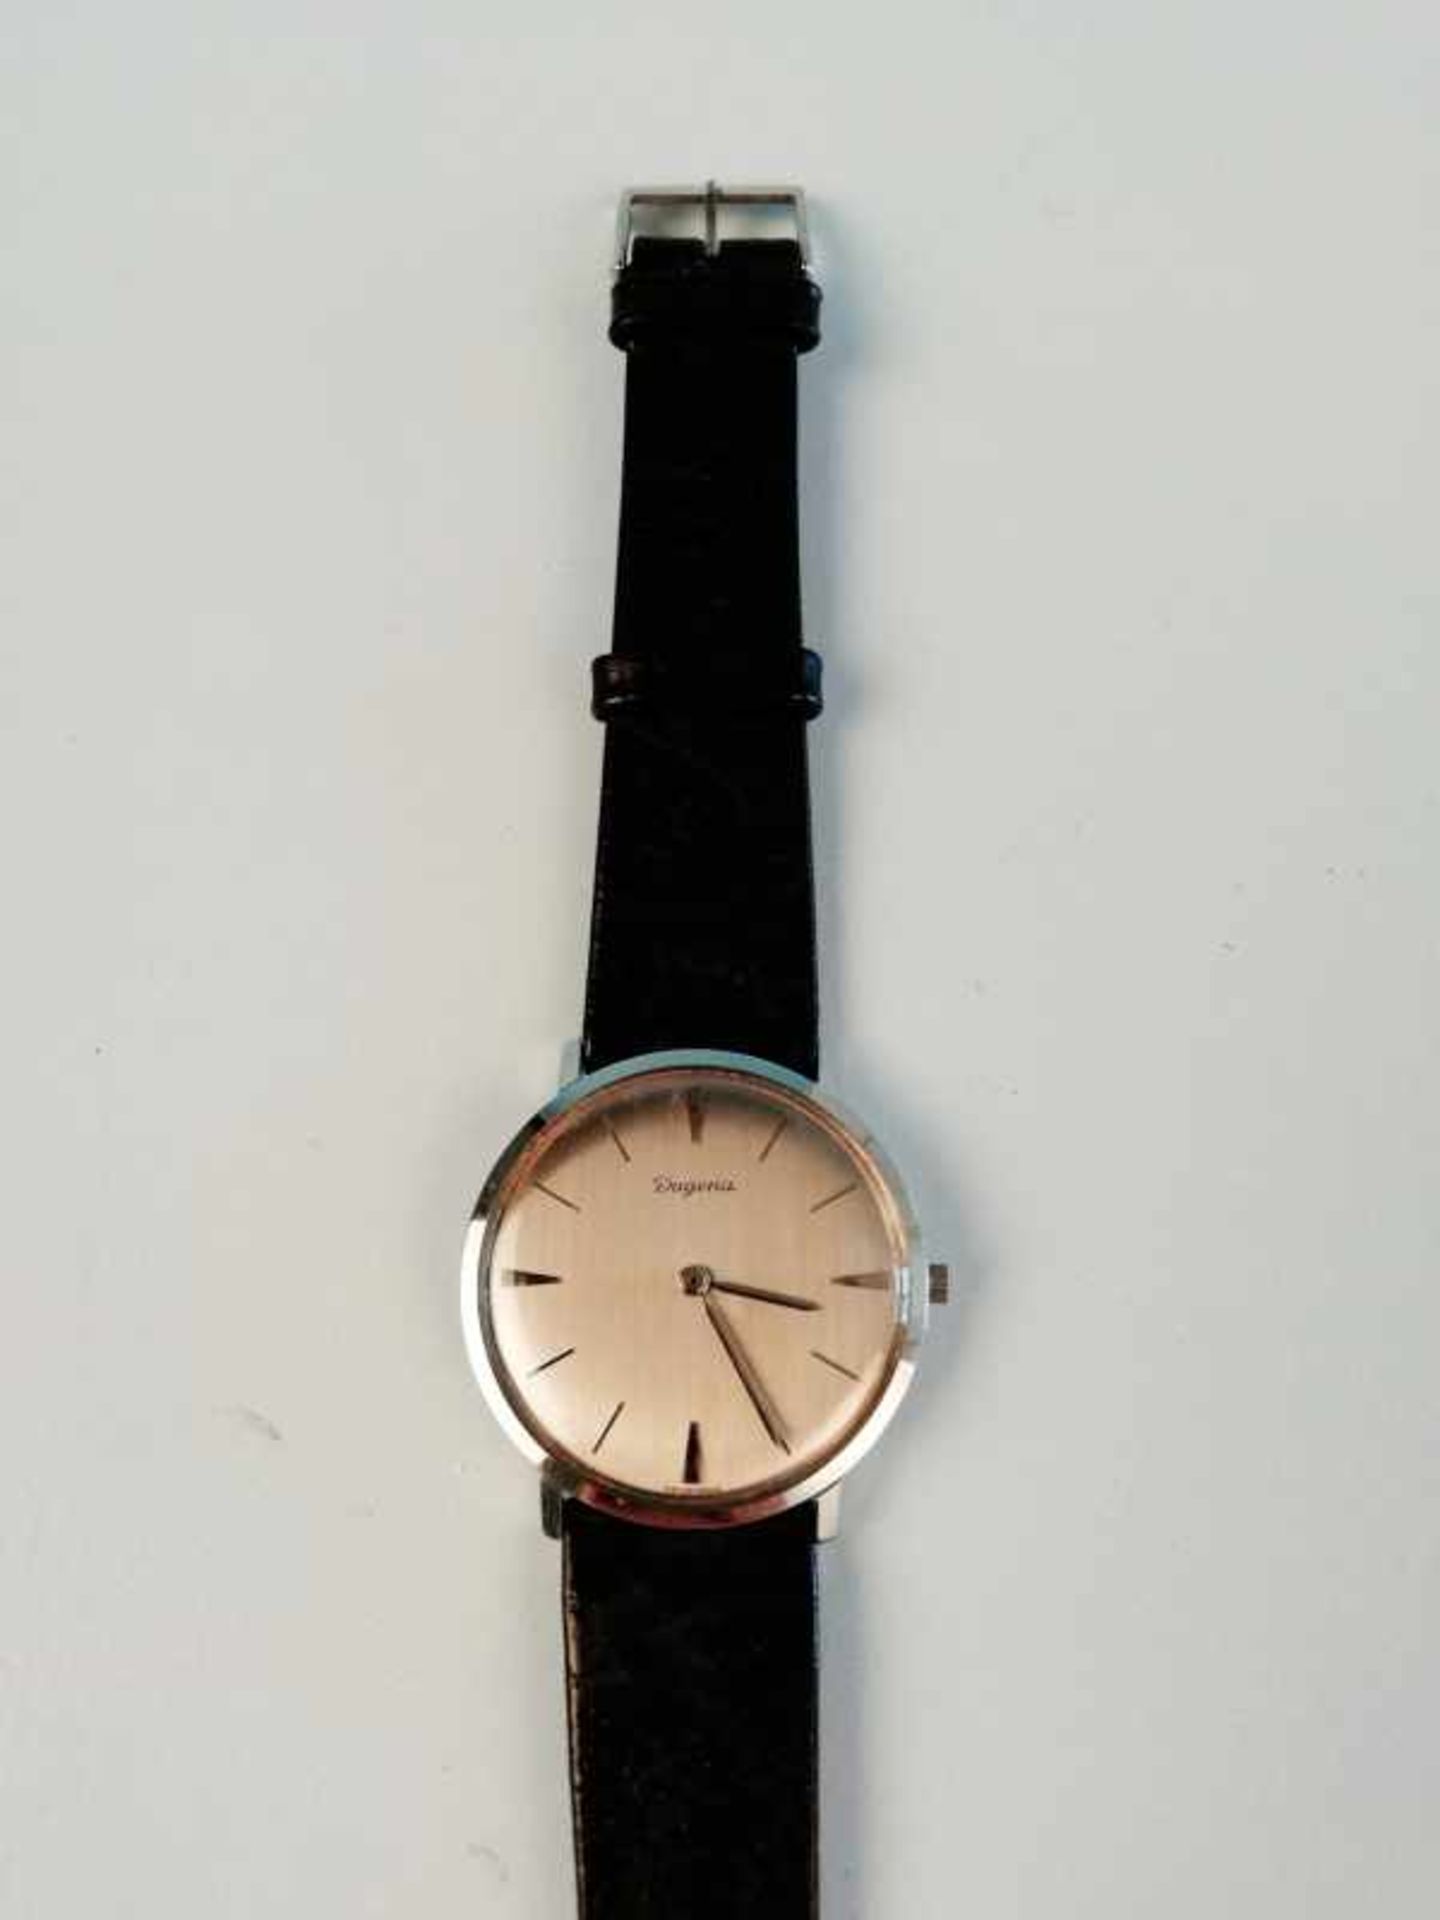 Armbanduhr "Dugena"Metall, Vintage, Ankerwerk, 24,4g, Werkservice wird empfohlen, keine Garantie auf